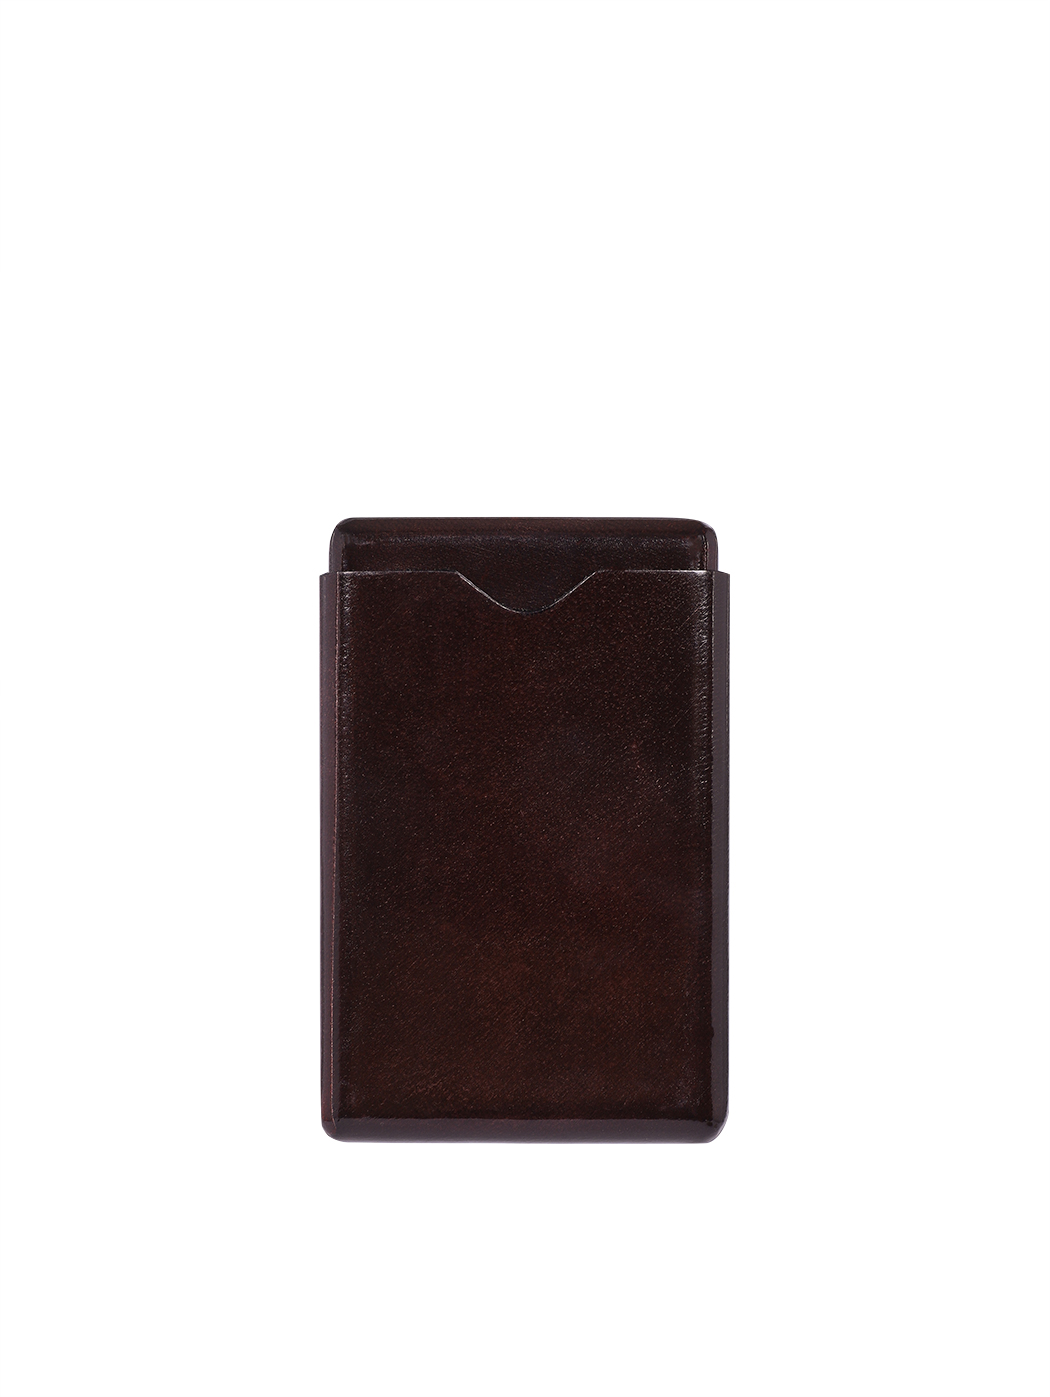 Кожаный футляр для визитных карточек коричневого цвета